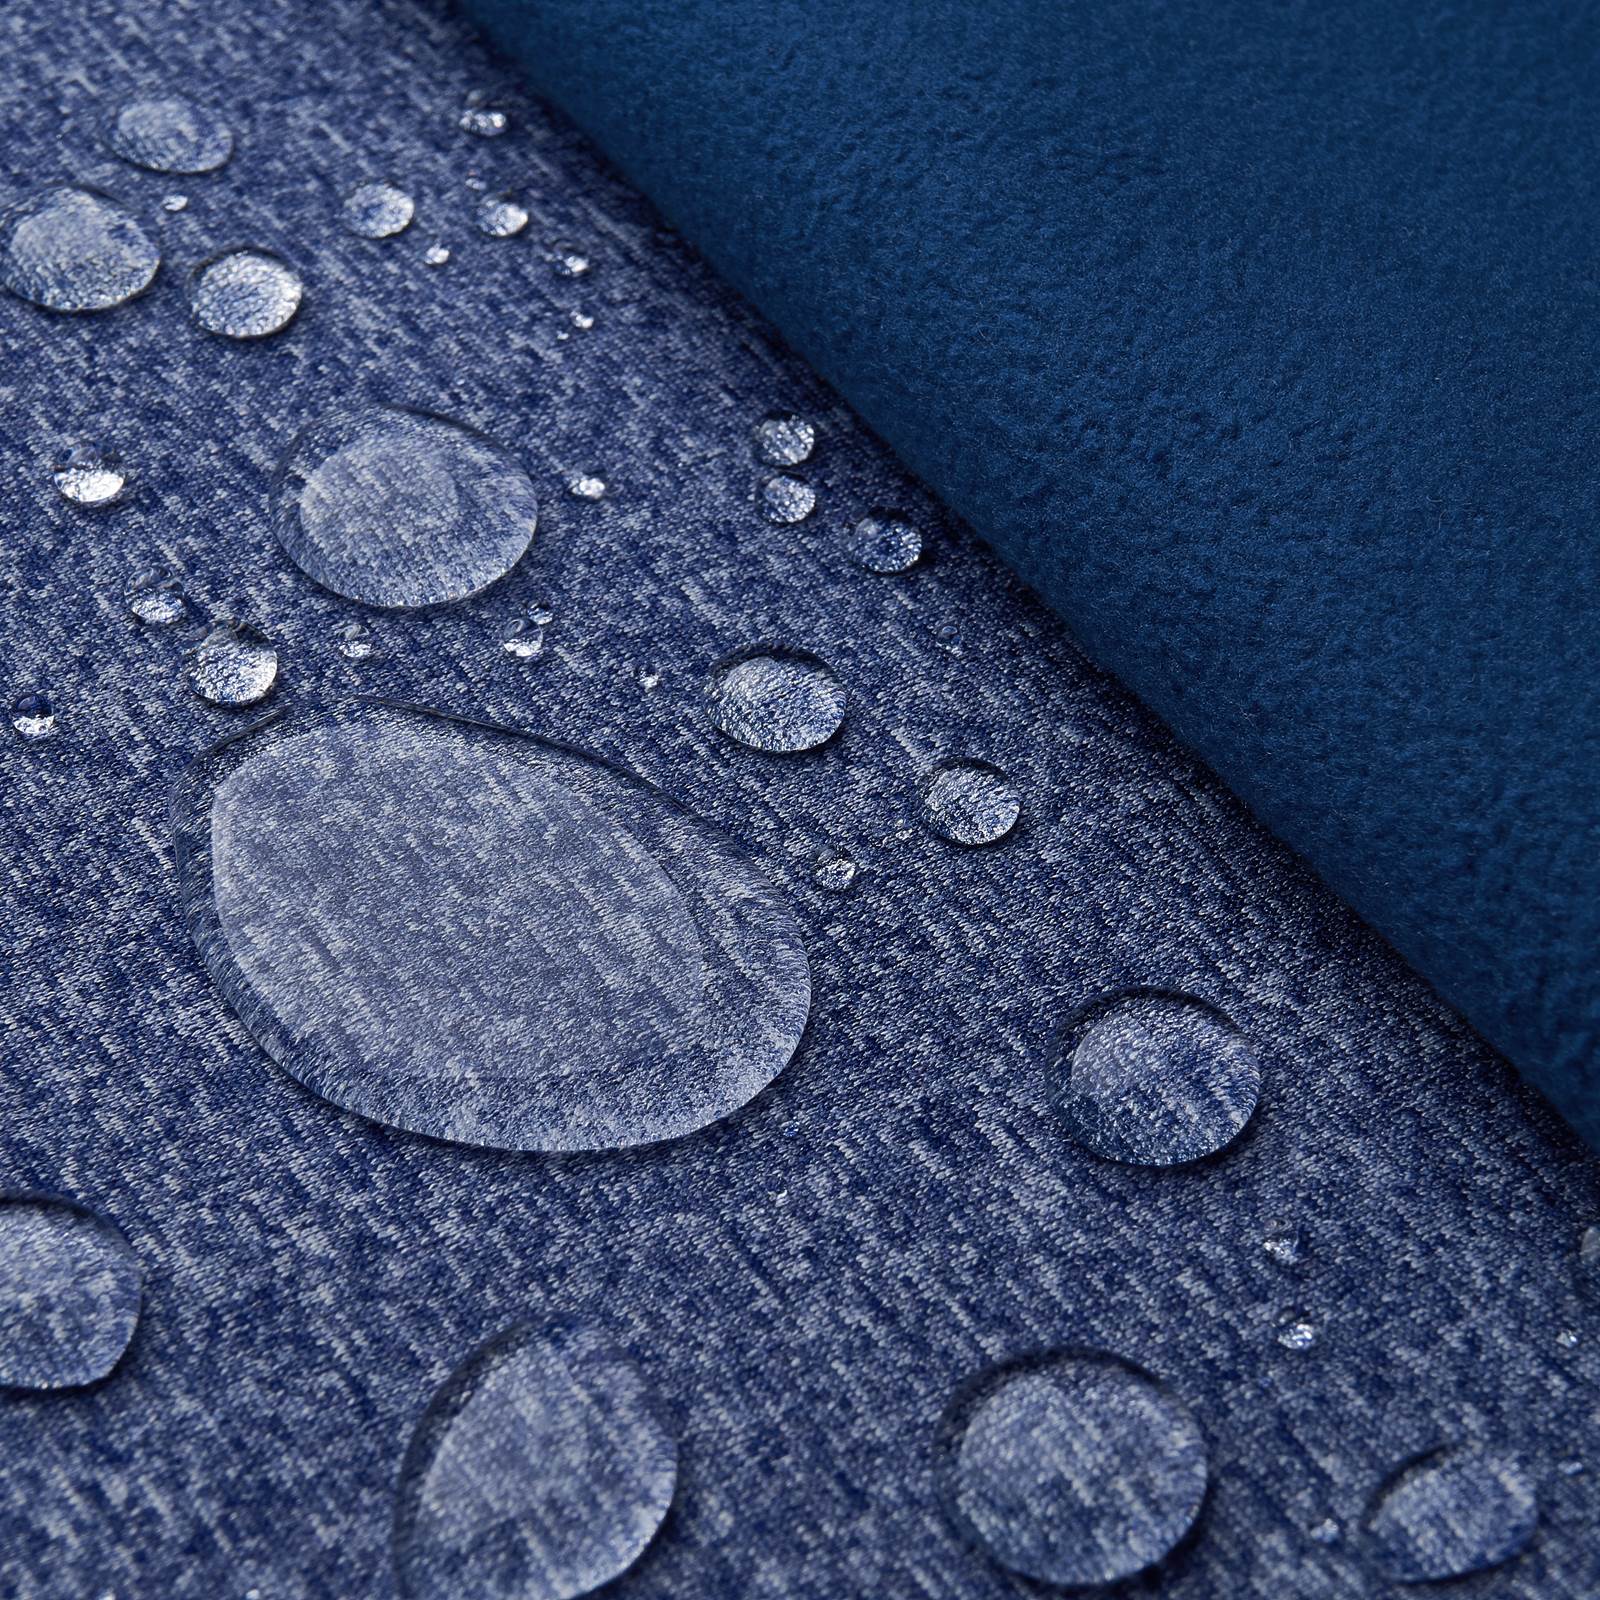 Melly - Softshell avec membrane climatique (bleu foncé mélange)